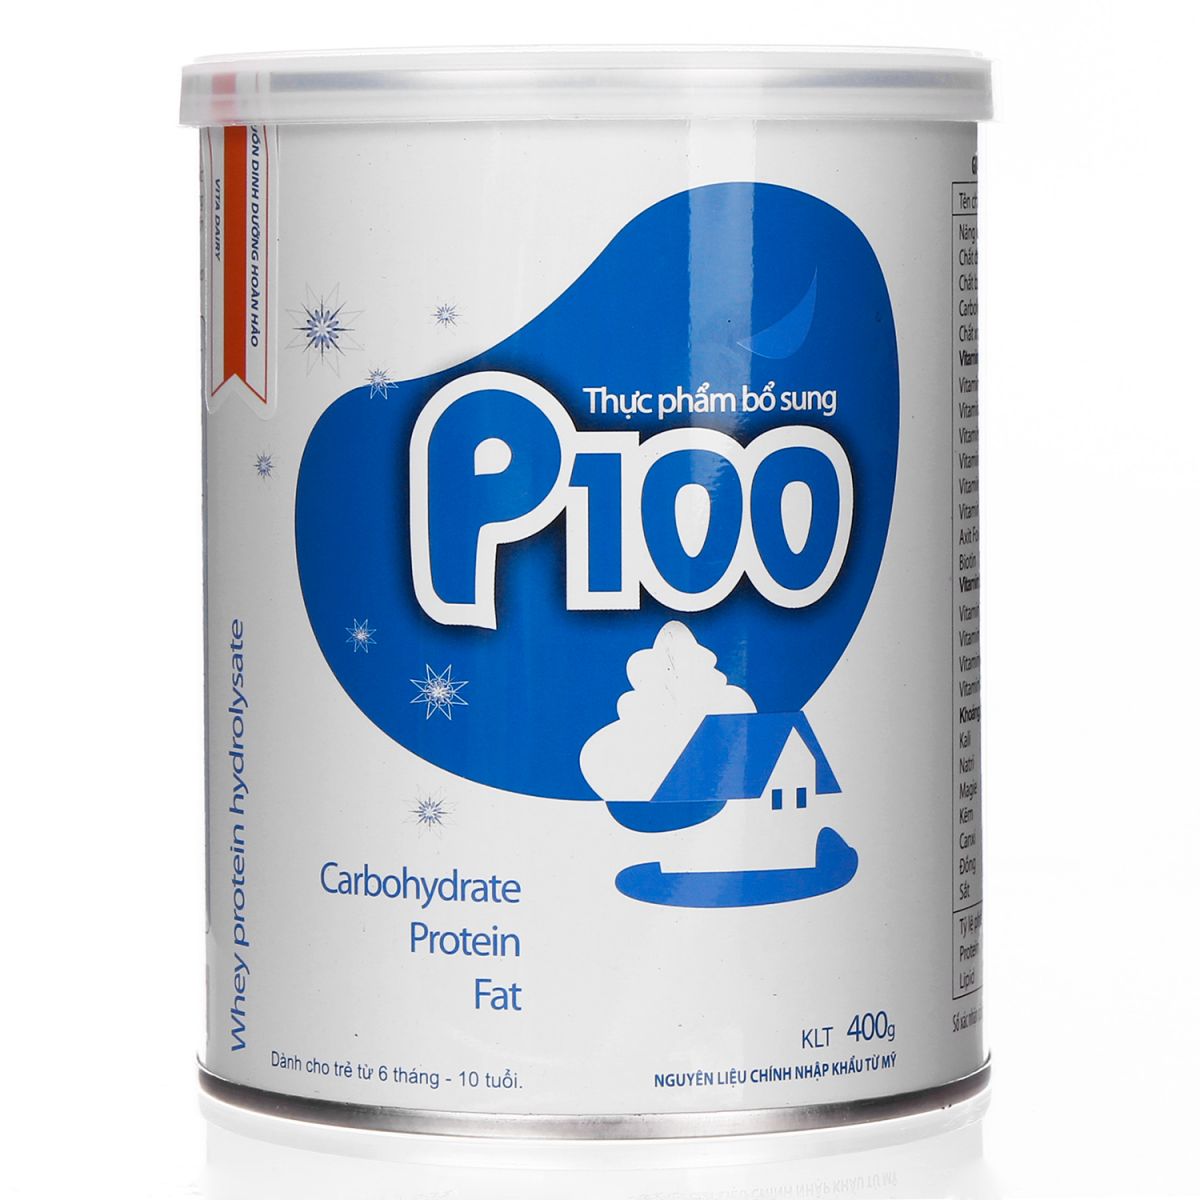 Sữa P100 của Viện Dinh Dưỡng giúp bé tăng cân tốt và ổn định về chiều cao